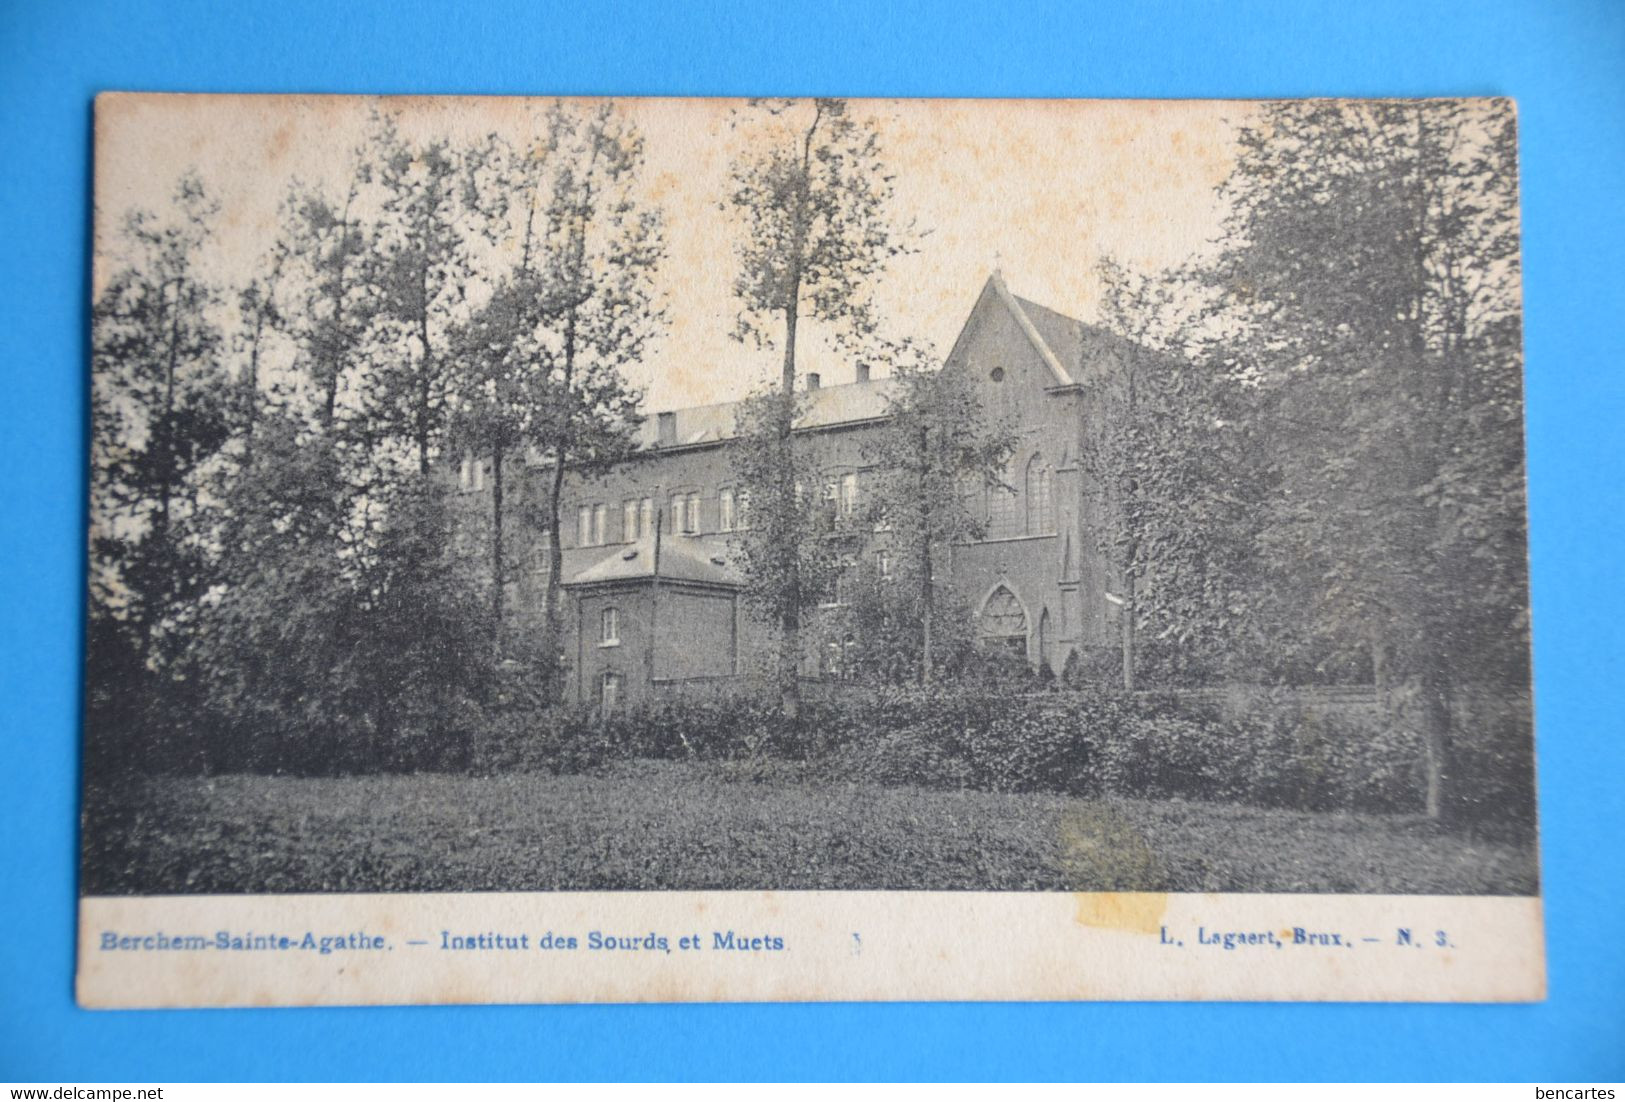 Berchem-Ste-Agathe 1900: Institut Des Sourds Et Muets - St-Agatha-Berchem - Berchem-Ste-Agathe